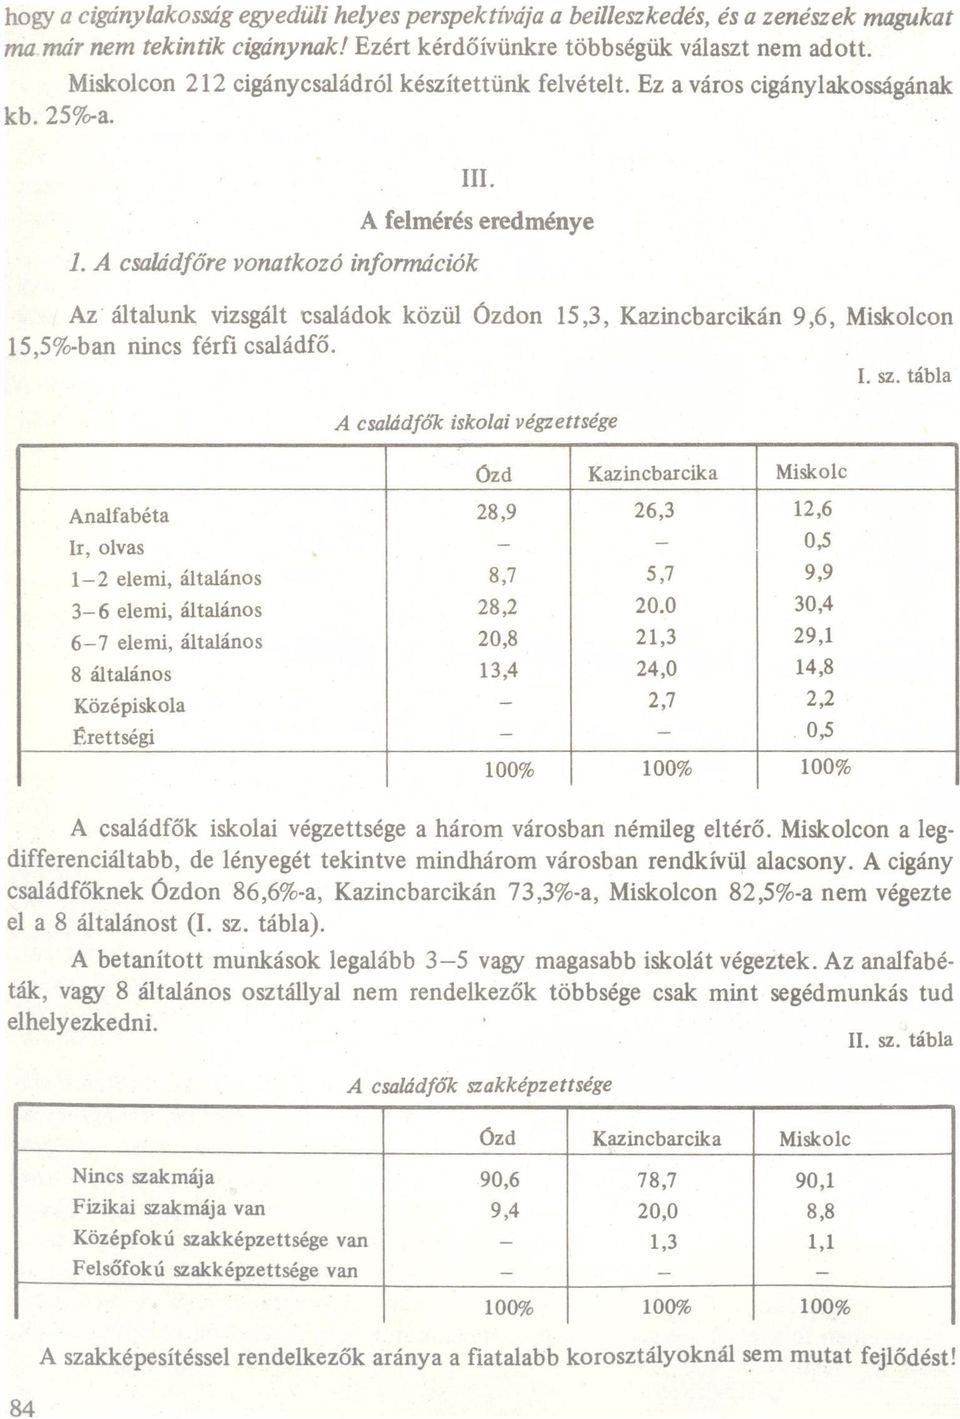 csládfőre vontkozó információk felmérés eredménye z áltlunk vizsgált csládok közül Ózdon l5,3, Kzincbrcikán 9,6, Miskolcon 15,5%bn nincs férfi csládfő. r I. sz.